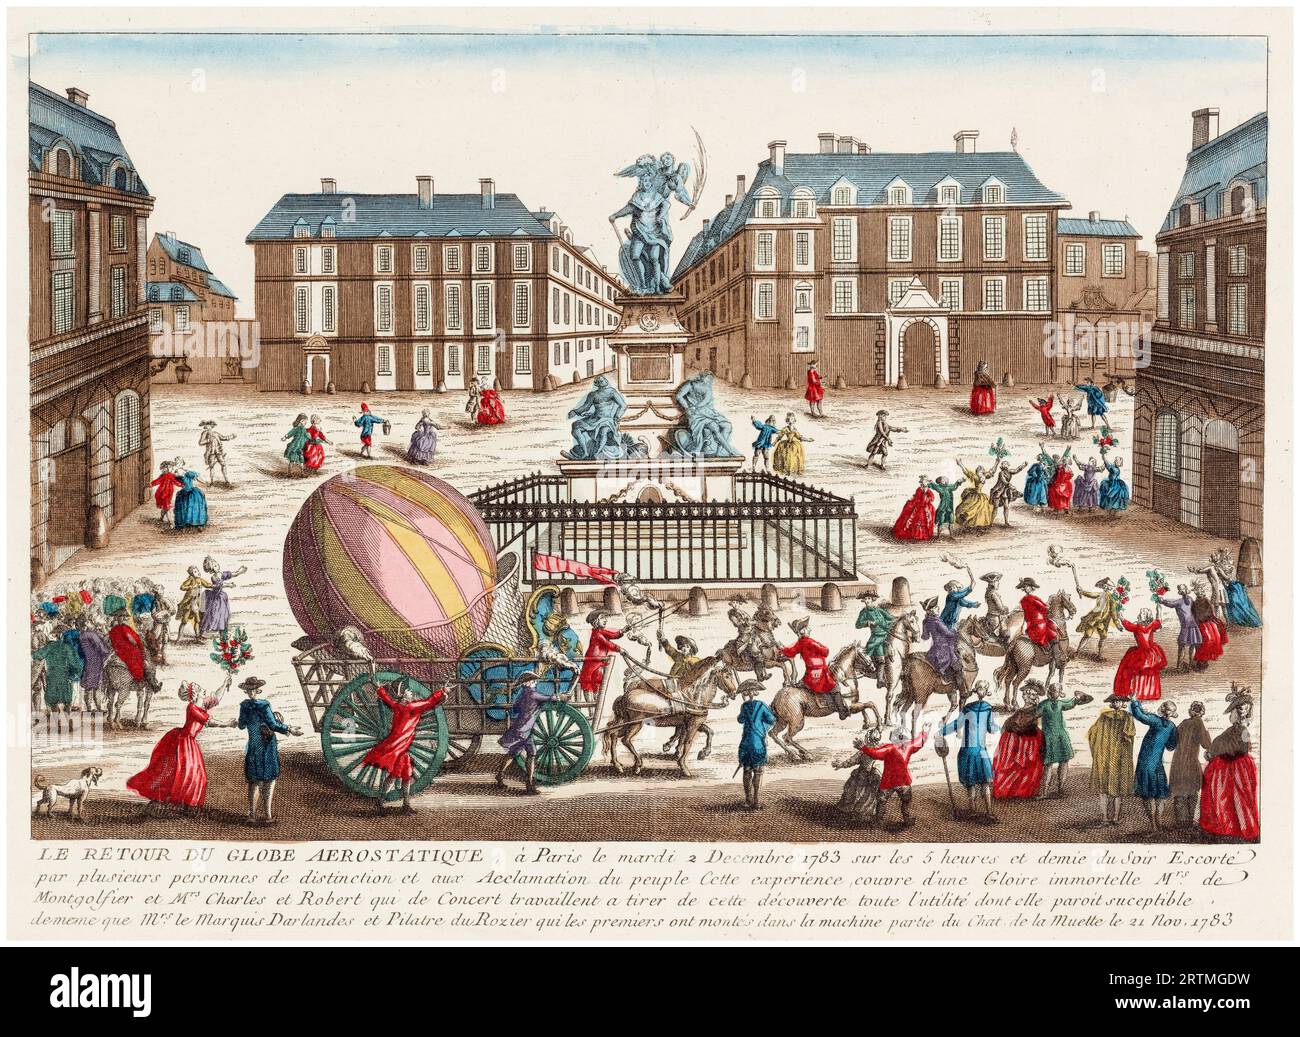 Il ritorno del pallone aerostatico Globe a idrogeno a Parigi martedì 2 dicembre 1783 dopo il volo riuscito di Jacques Charles e Marie-Noël Robert il giorno prima. Incisione colorata a mano, 1783 Foto Stock